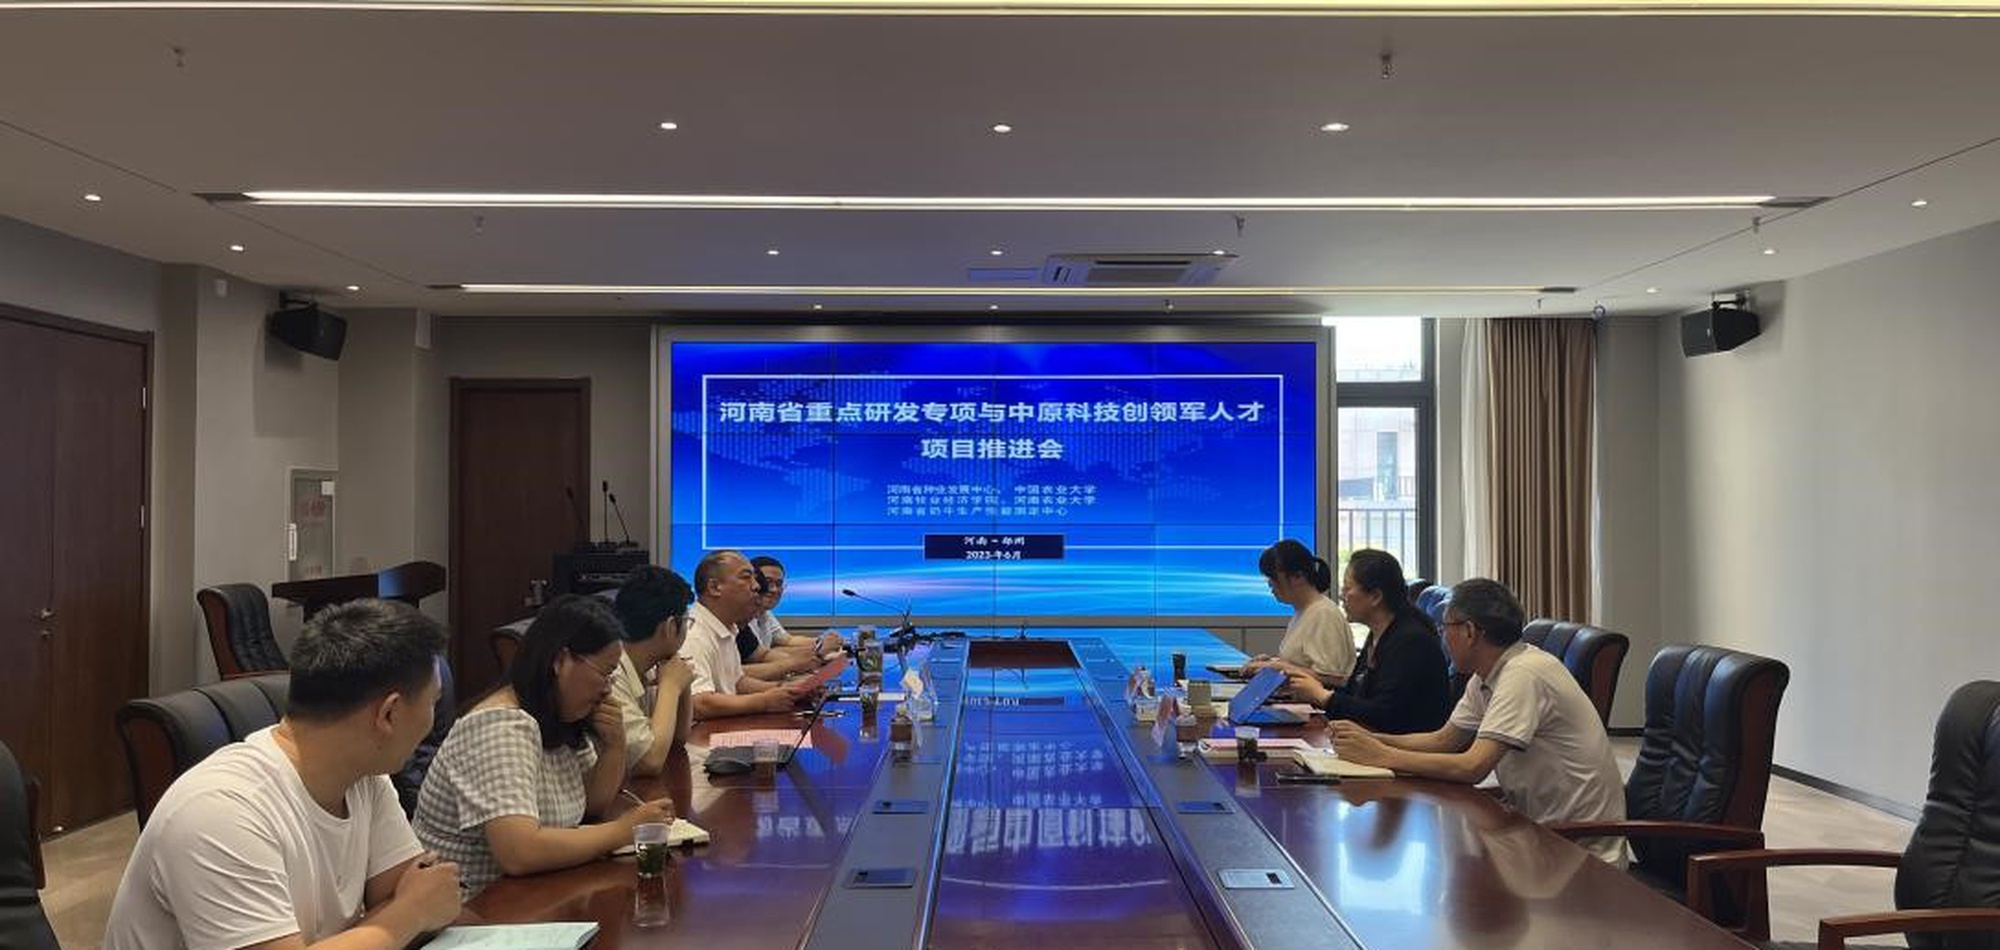 河南省奶牛种业创新重点研发专项推进会在郑召开 6.30